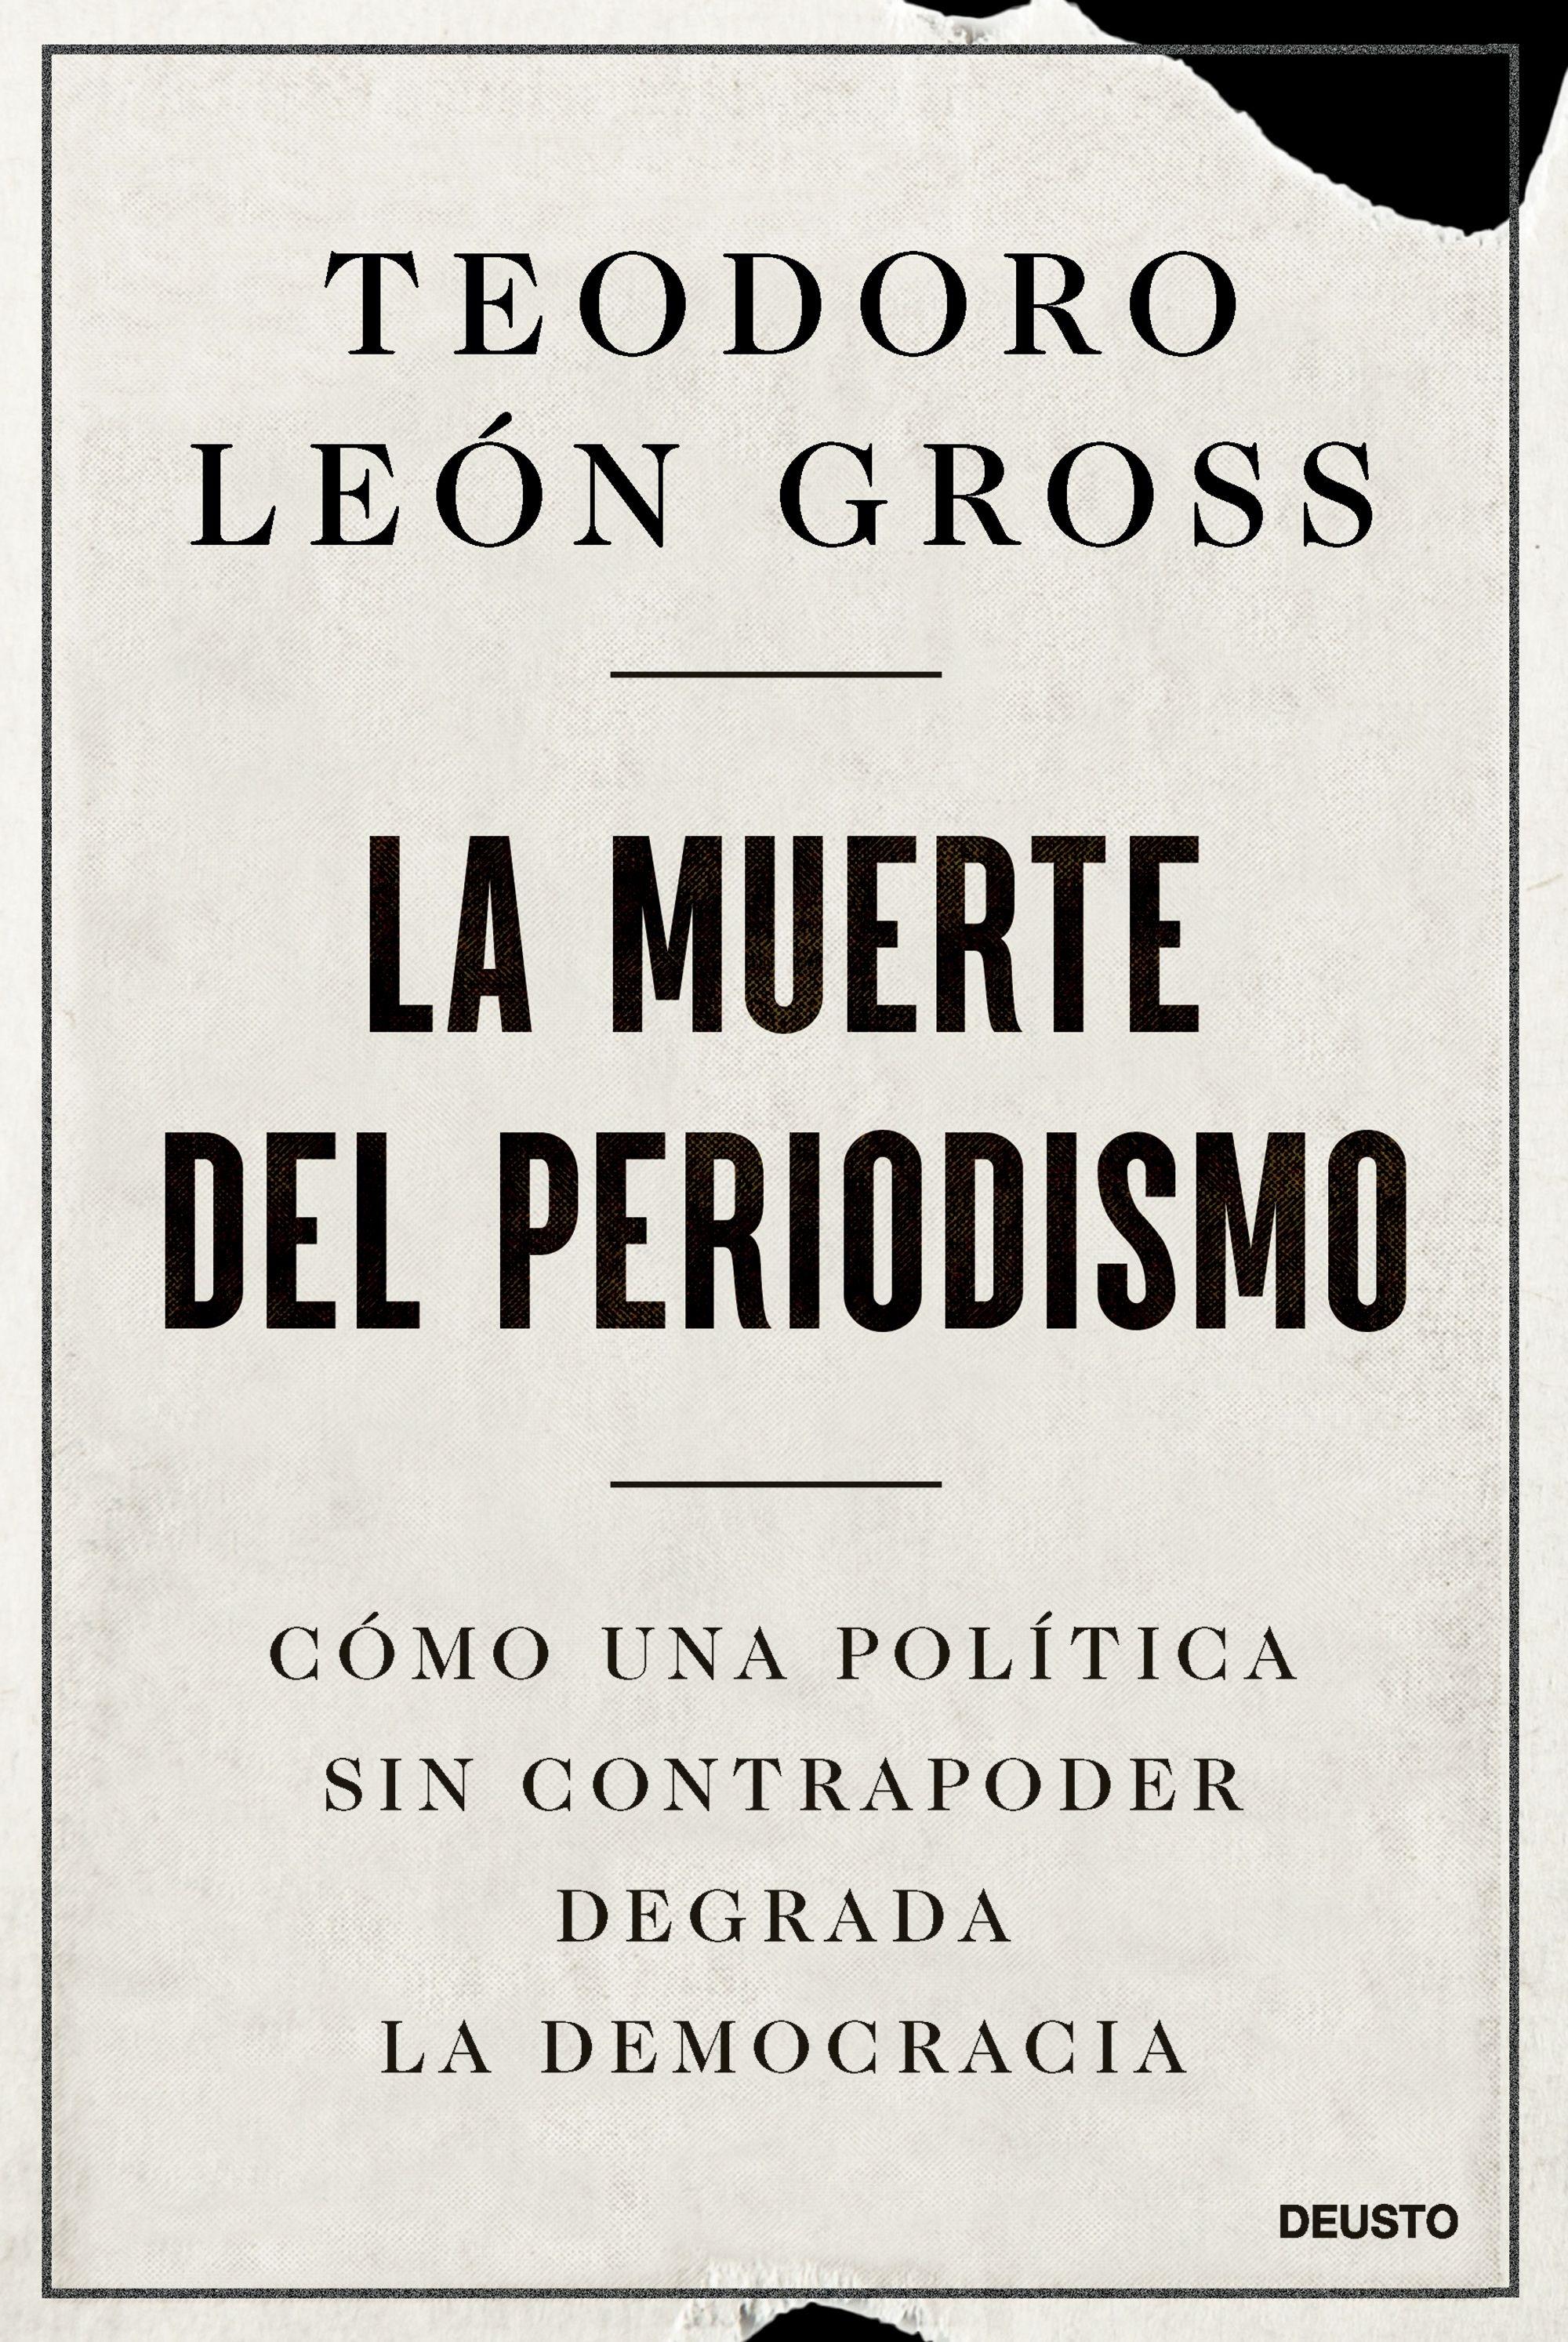 La Muerte del Periodismo "Cómo una Política sin Contrapoder Degrada la Democracia". 